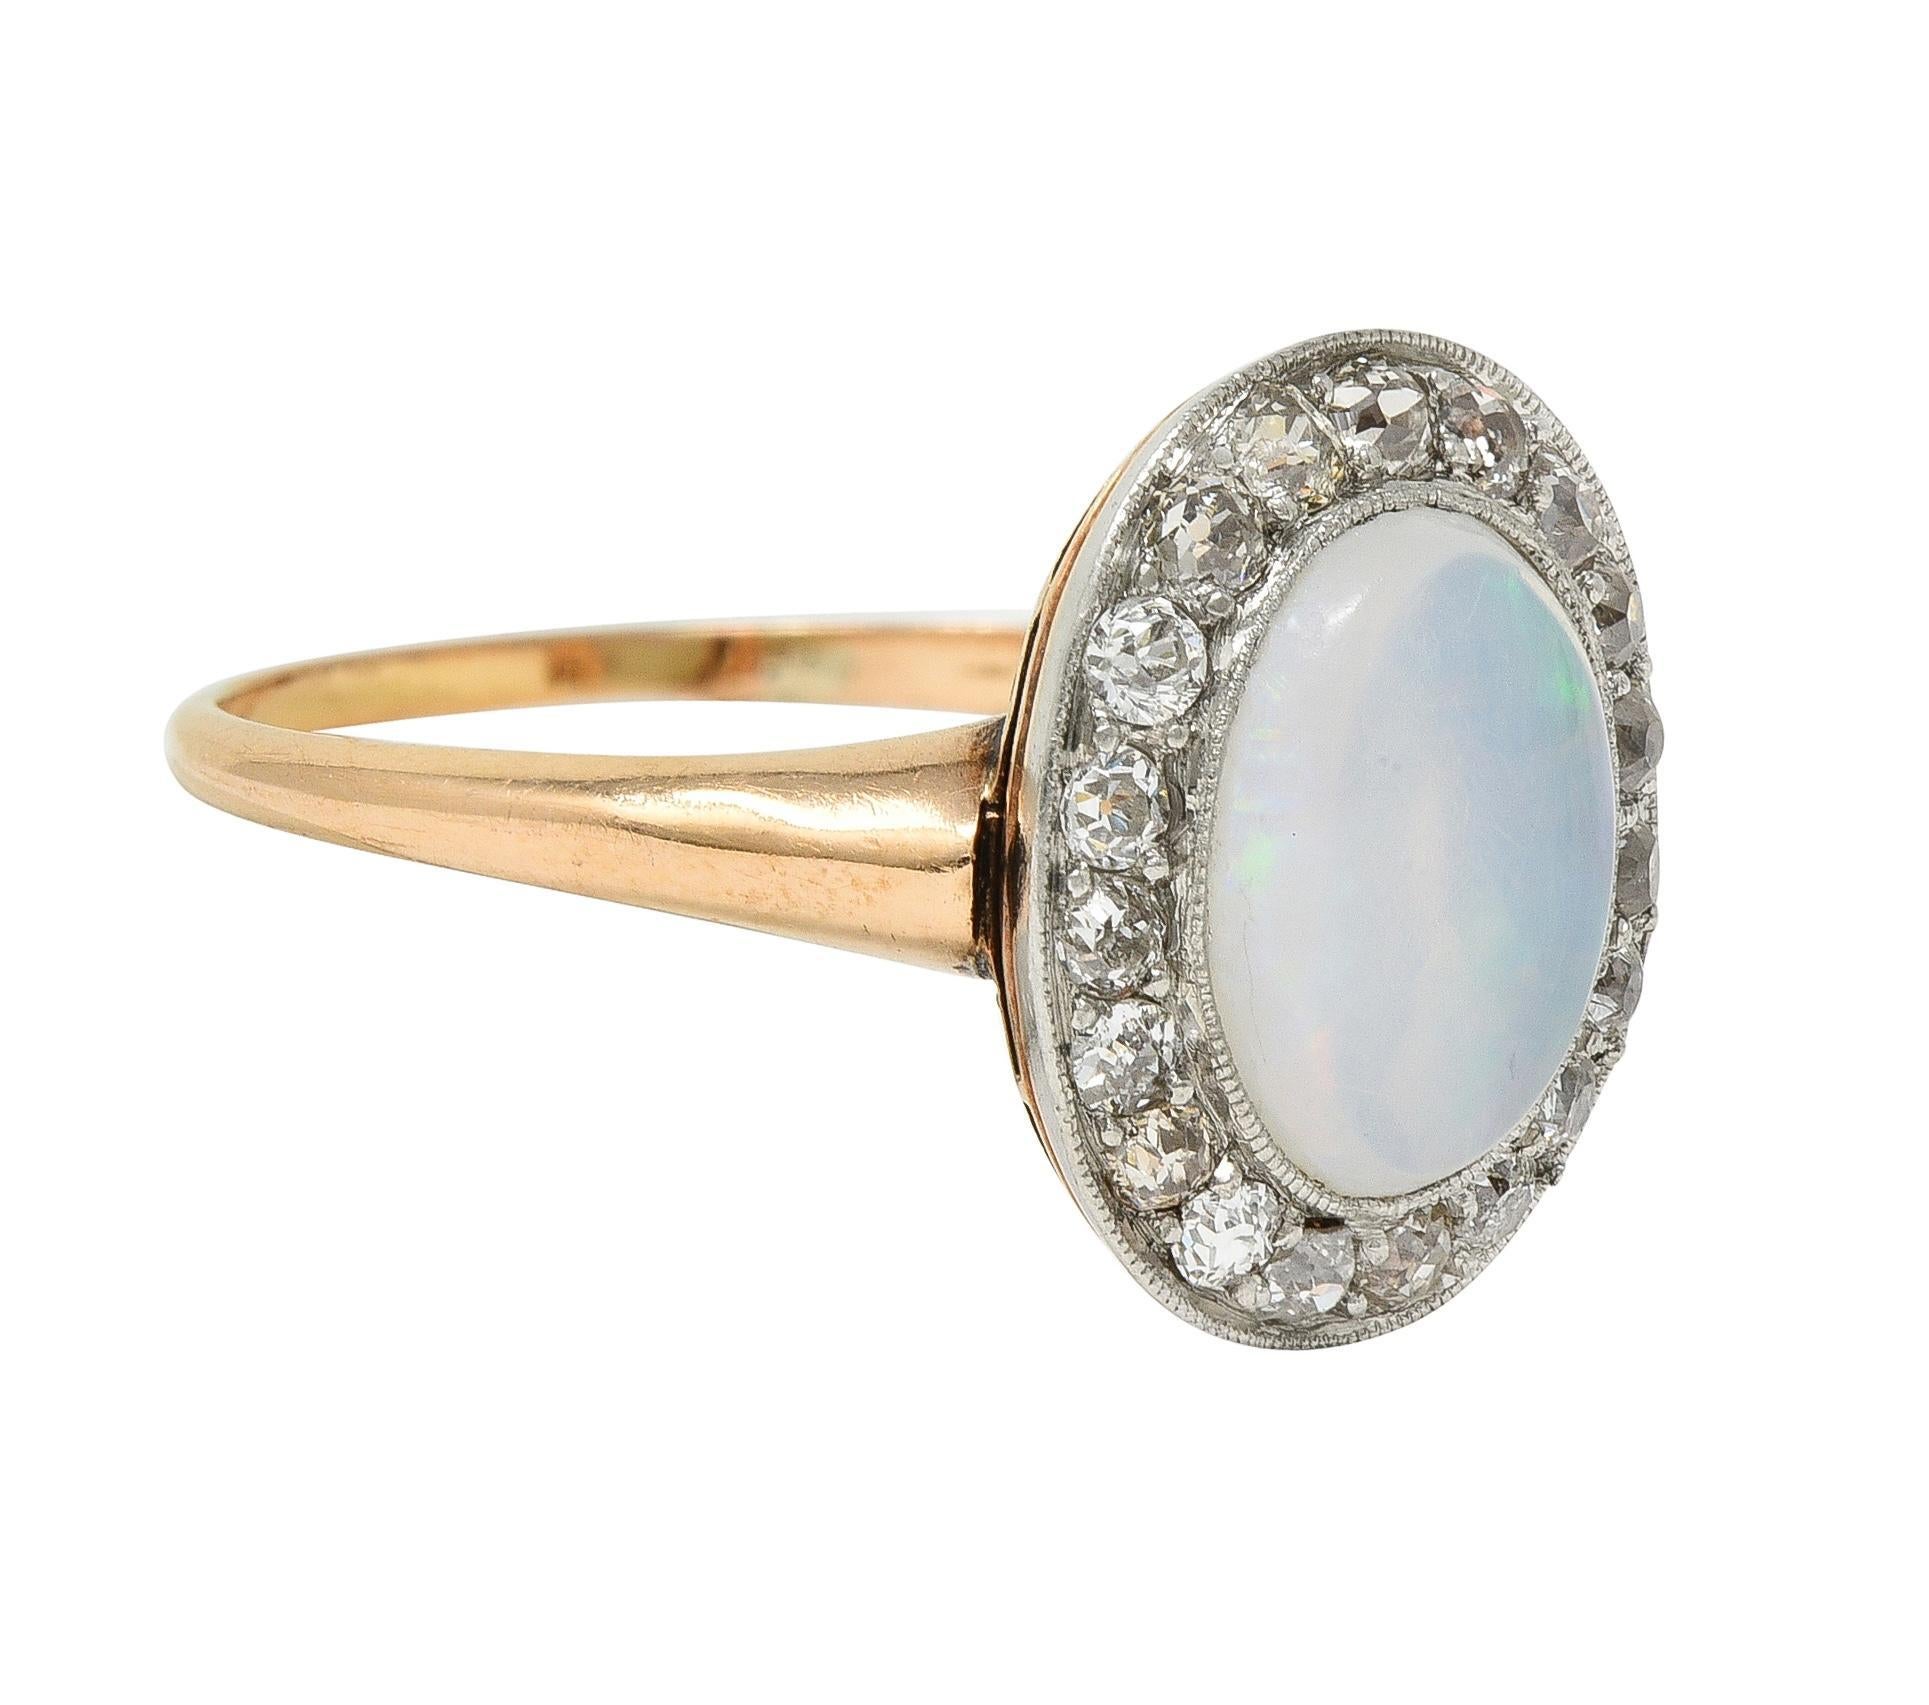 Centrage d'un cabochon d'opale gélifiée de forme ovale mesurant 10,0 x 8,0 mm 
Corps blanc transparent avec jeu de couleurs spectrales 
Tête en platine sertie d'un chaton et entourée d'un halo 
Composé de vieux diamants européens et de diamants